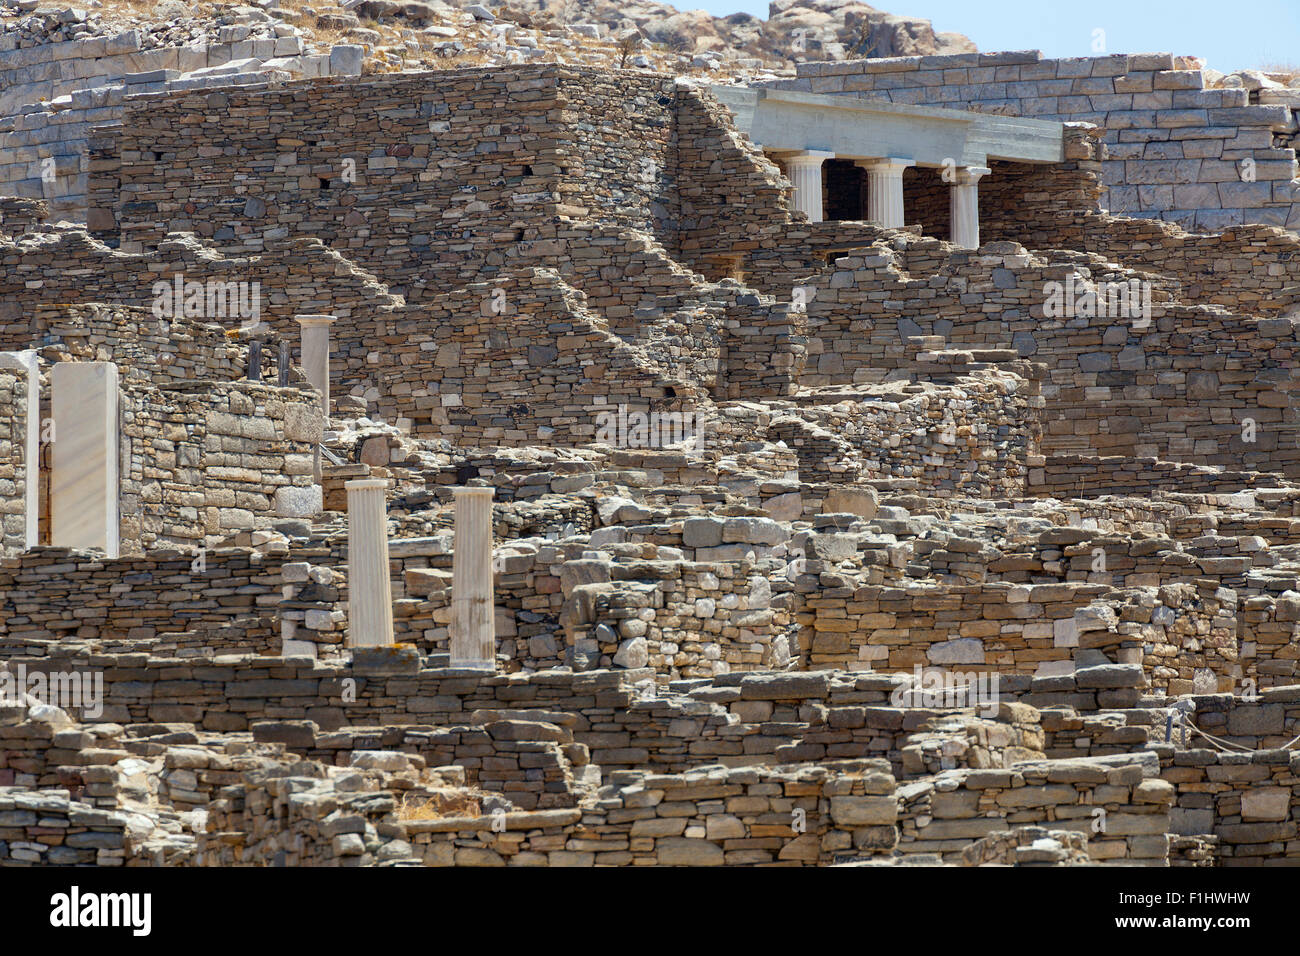 Rovine romane sull'isola greca di Delos, nelle Cicladi Foto Stock